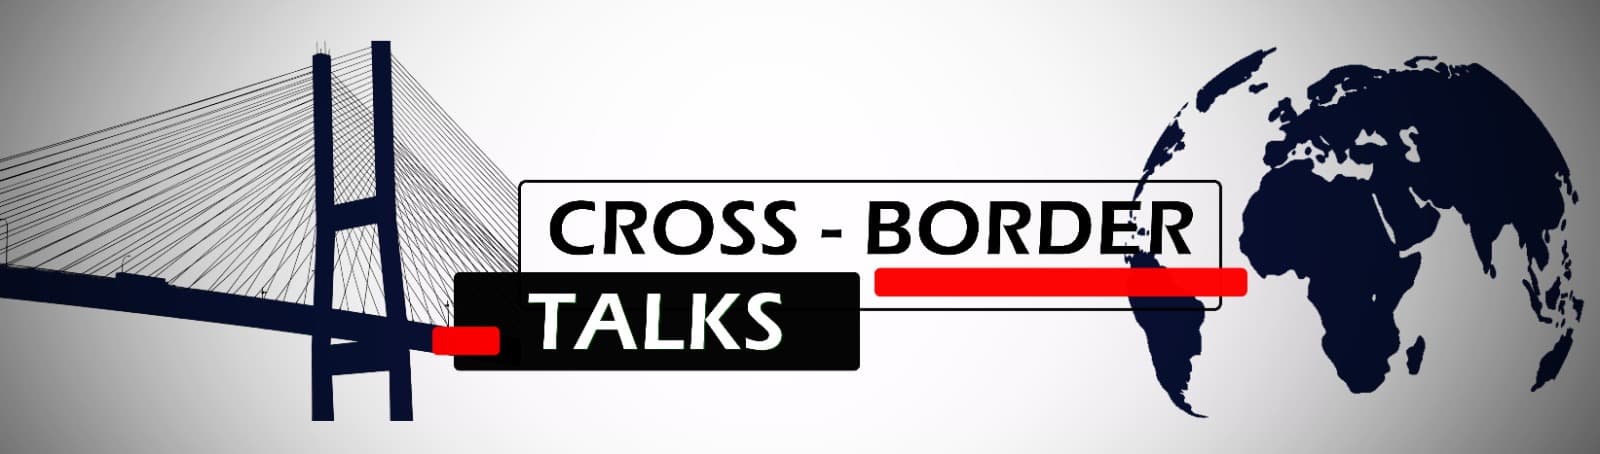 Crossborder talks